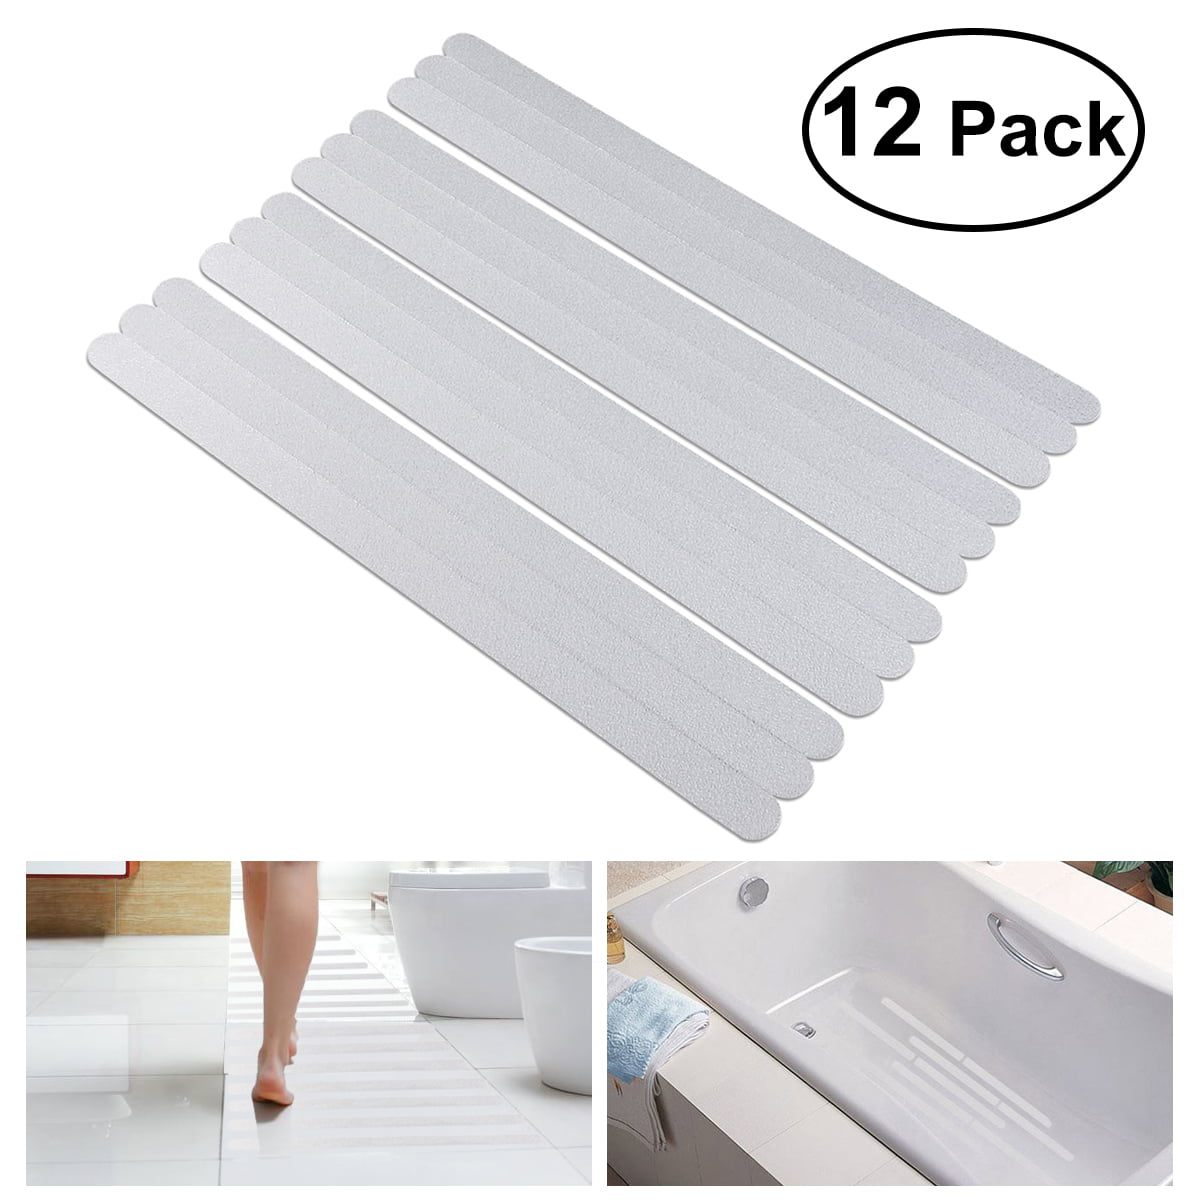 Details about  / Anti Slip Bath Grip Stickers Non Slip Shower Strips Flooring Safety Tape Mat DMF